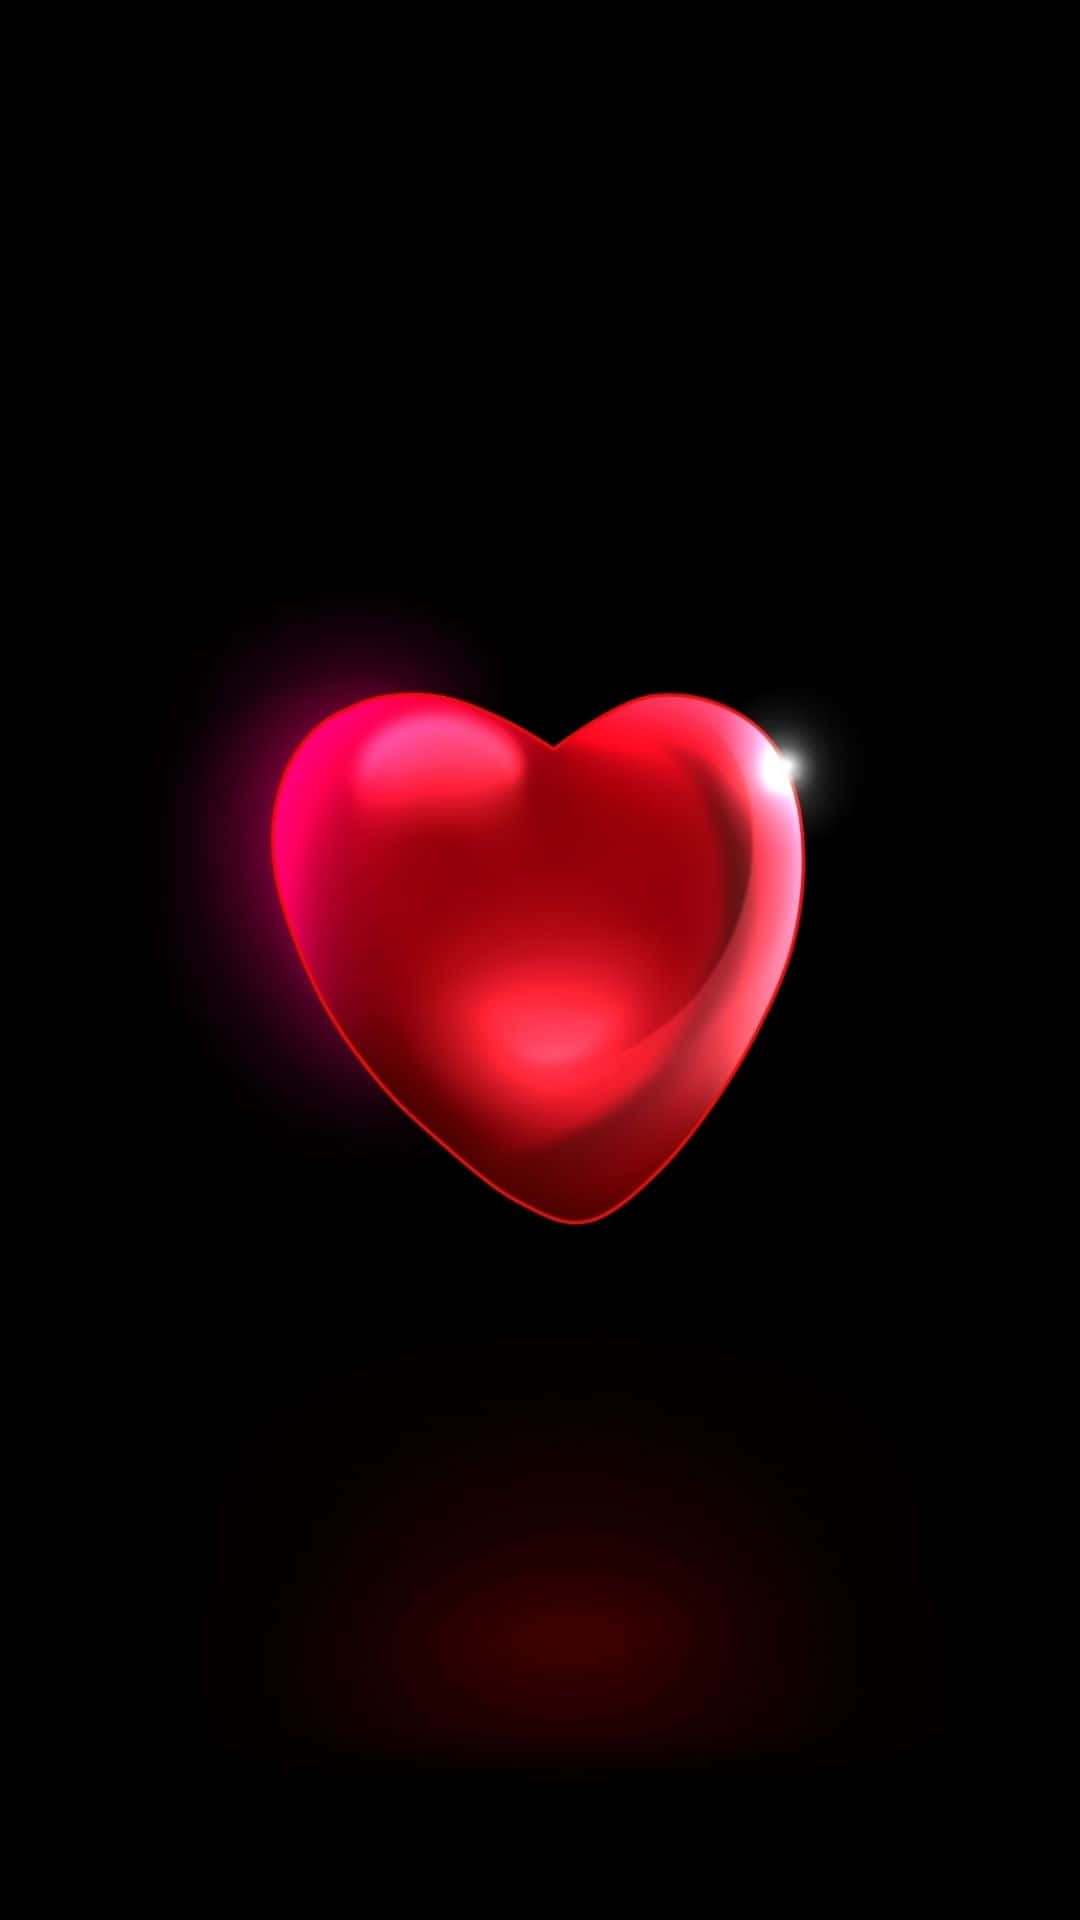 Vis din kærlighed med en smuk rød hjerte! Wallpaper